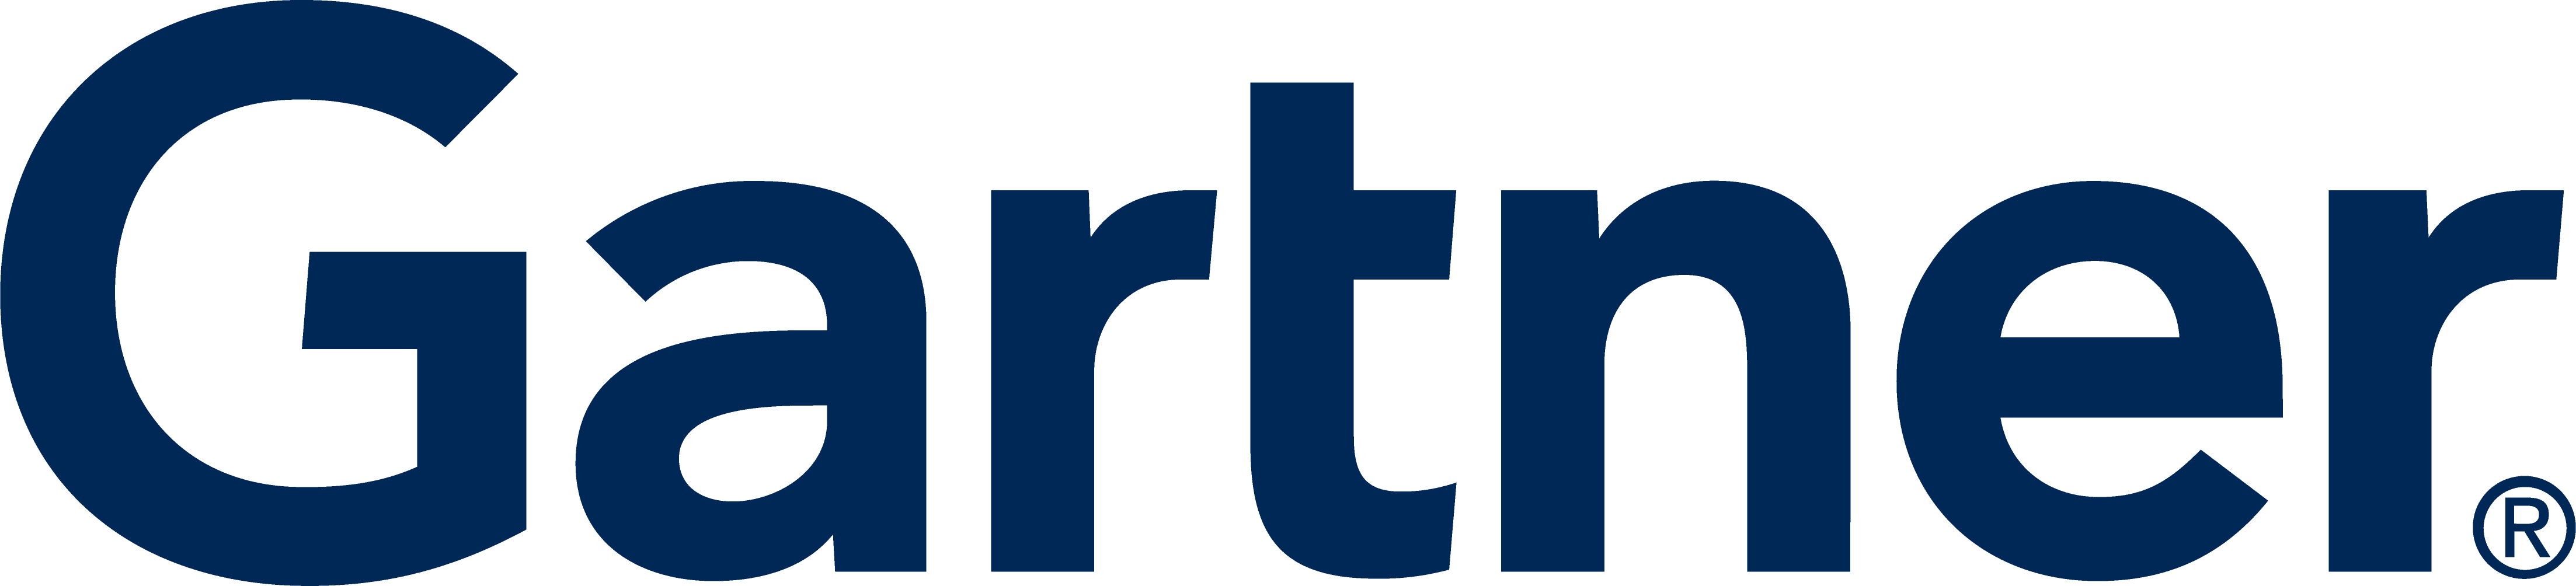 Gartner partner logo